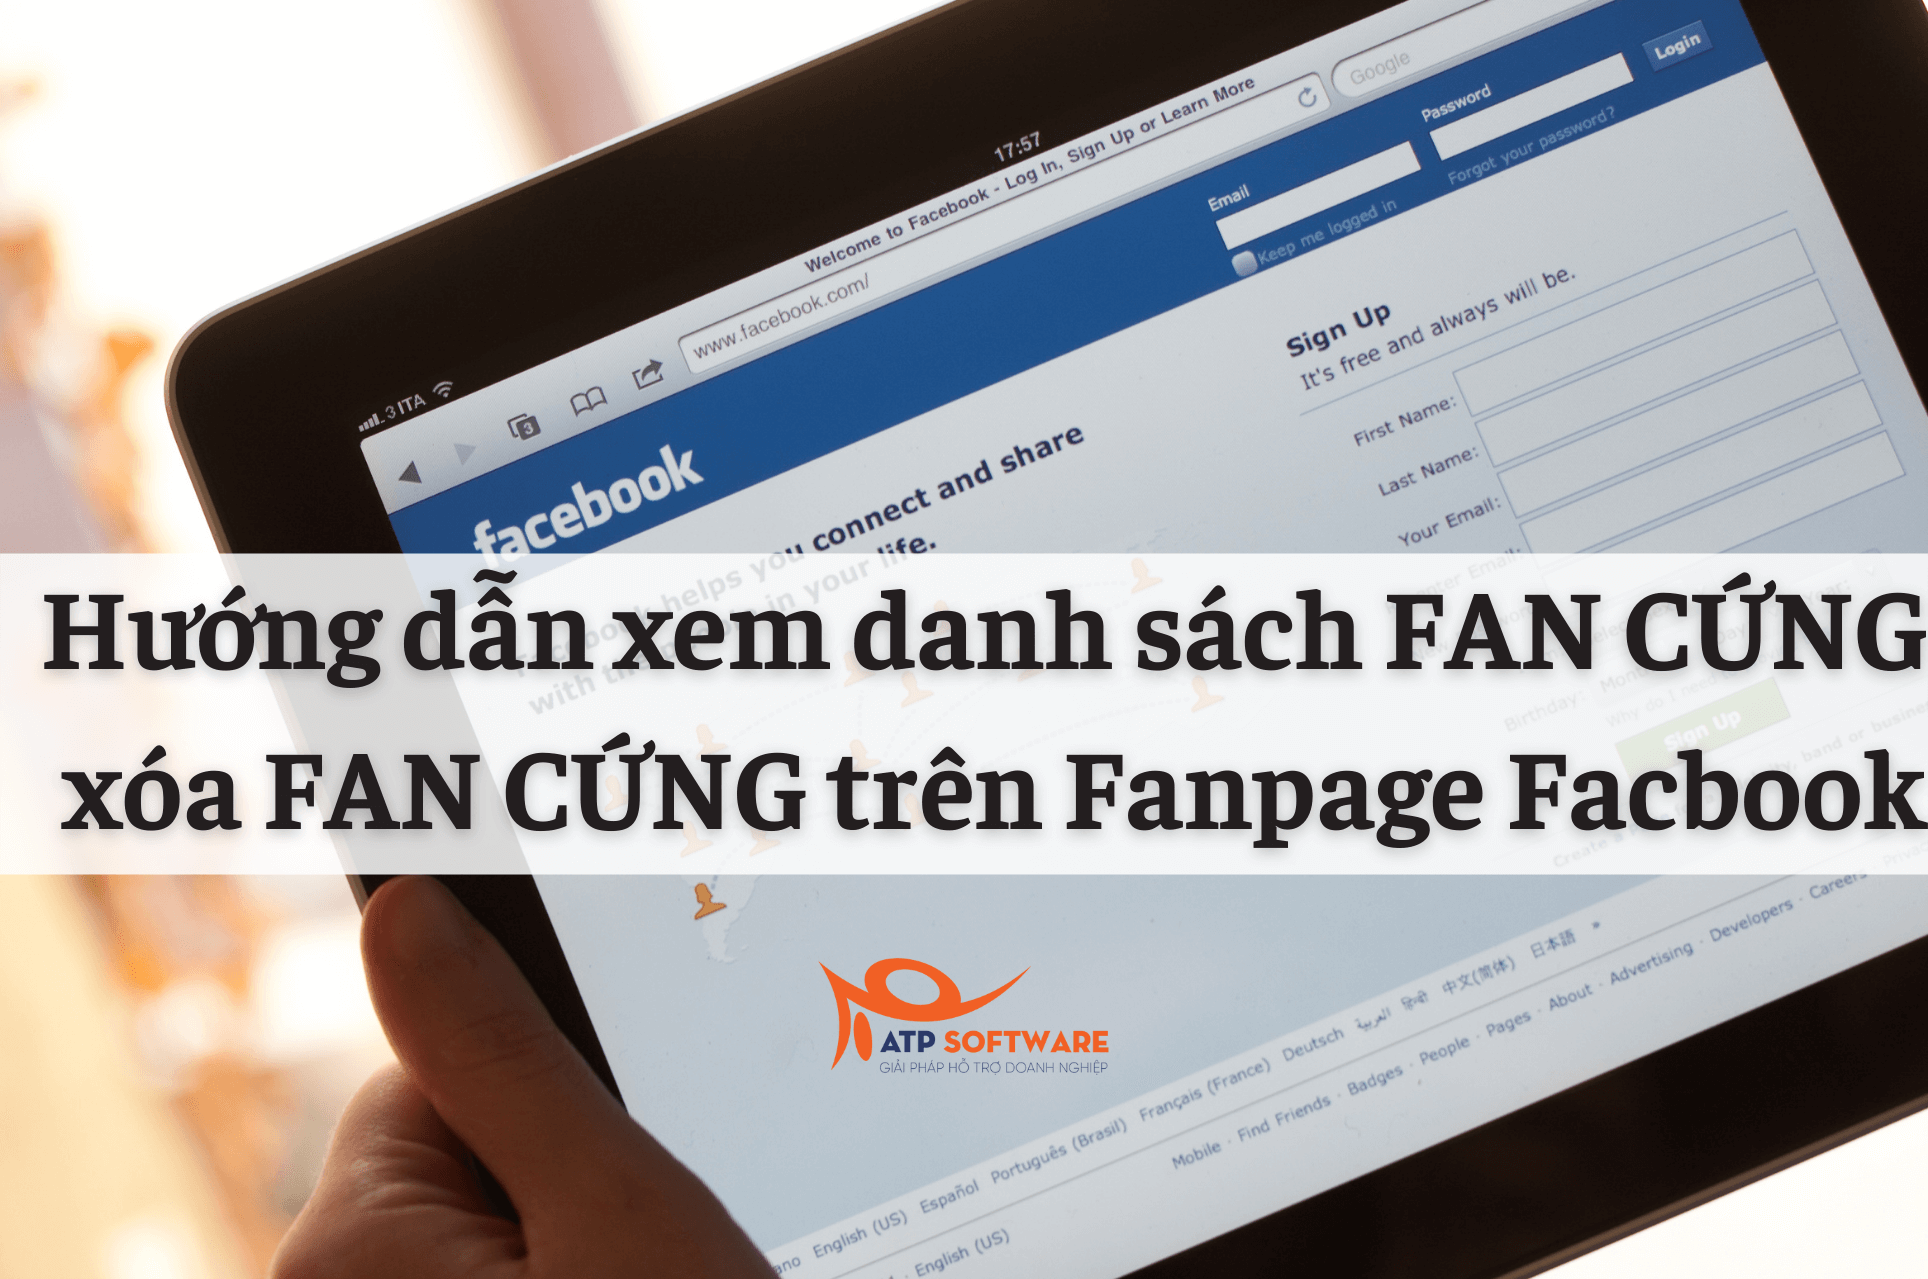 Hướng dẫn xem danh sách FAN CỨNG và xóa FAN CỨNG trên Fanpage Facbook | ATP Software